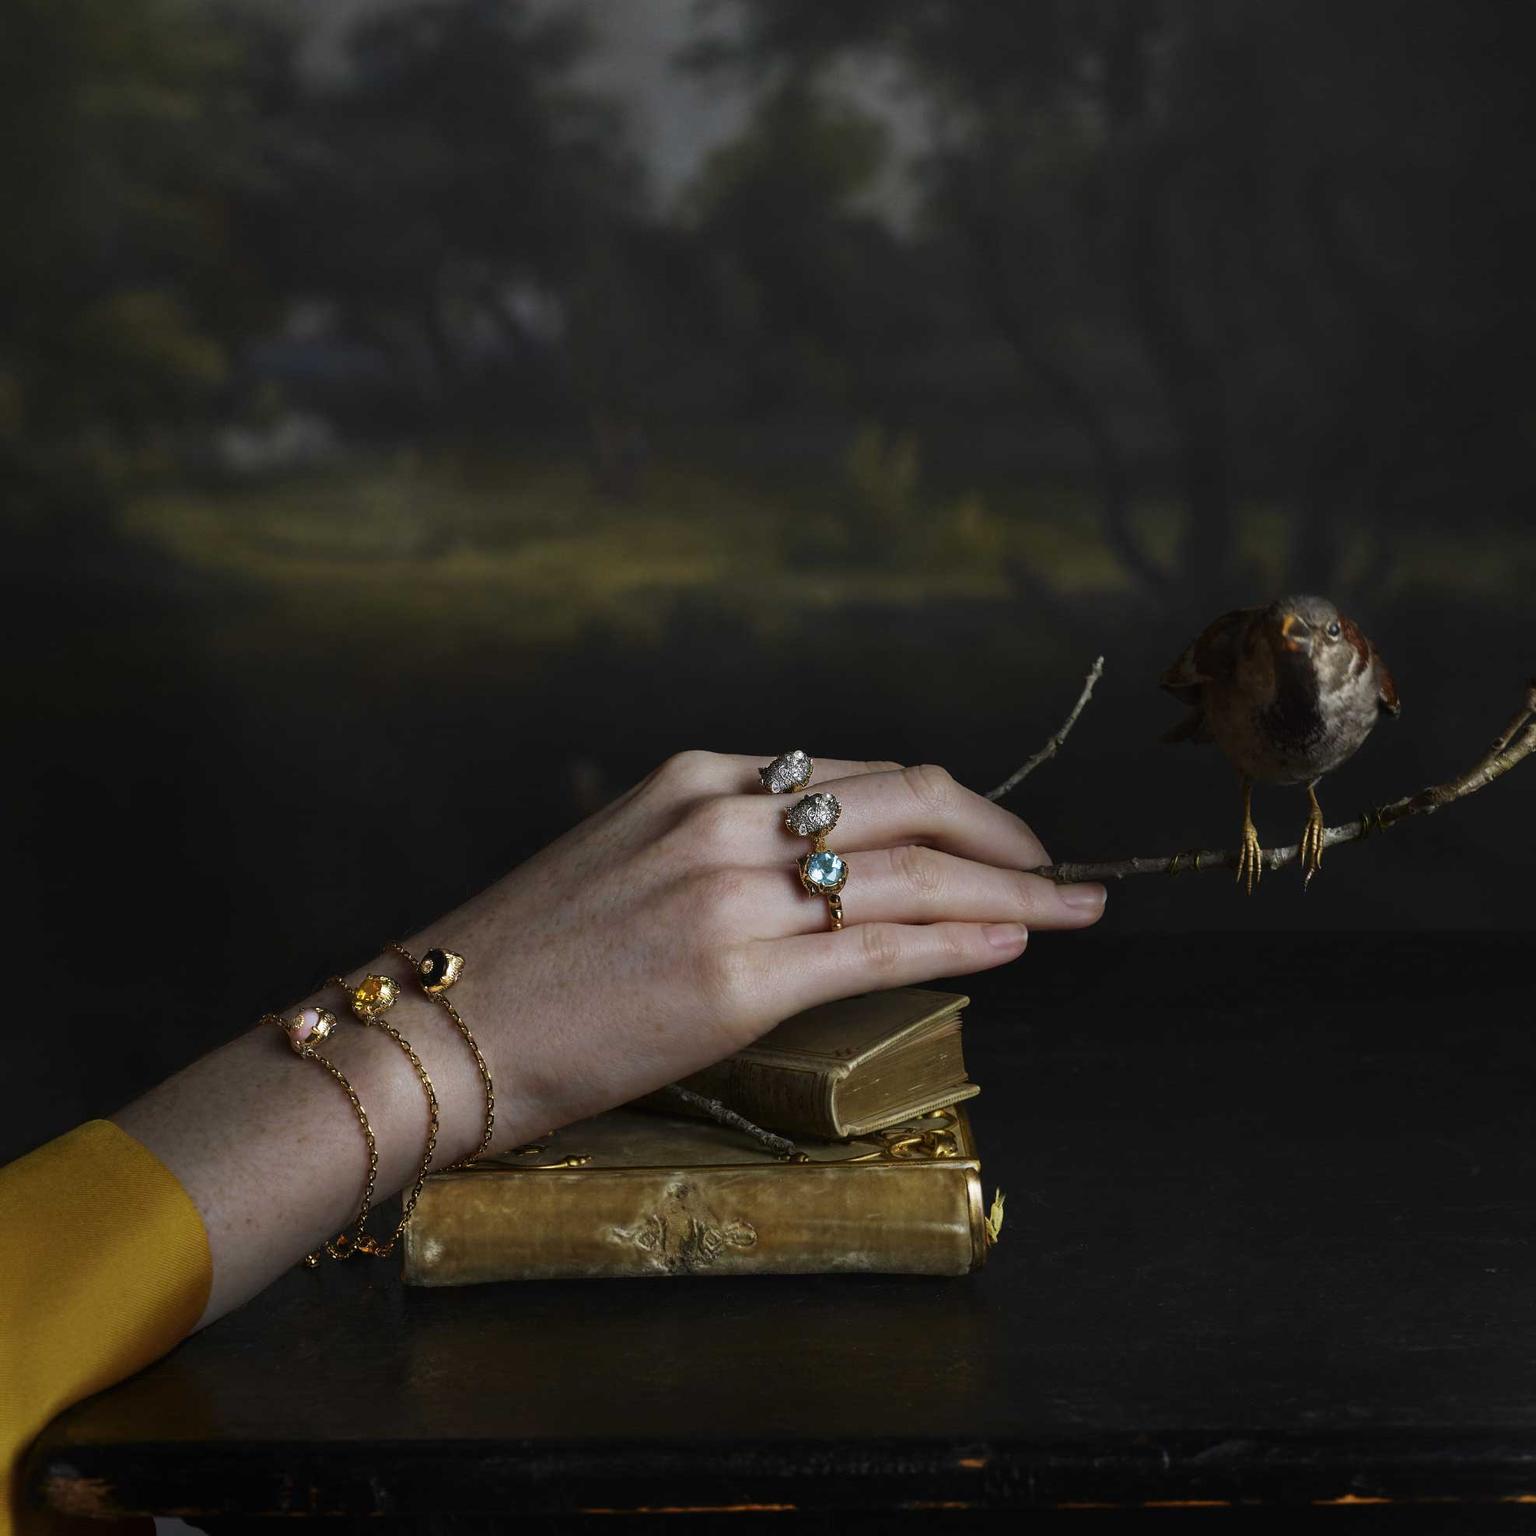 Gucci Le Marche des Merveilles jewels in portrait rings and bracelet Julia Hetta photography